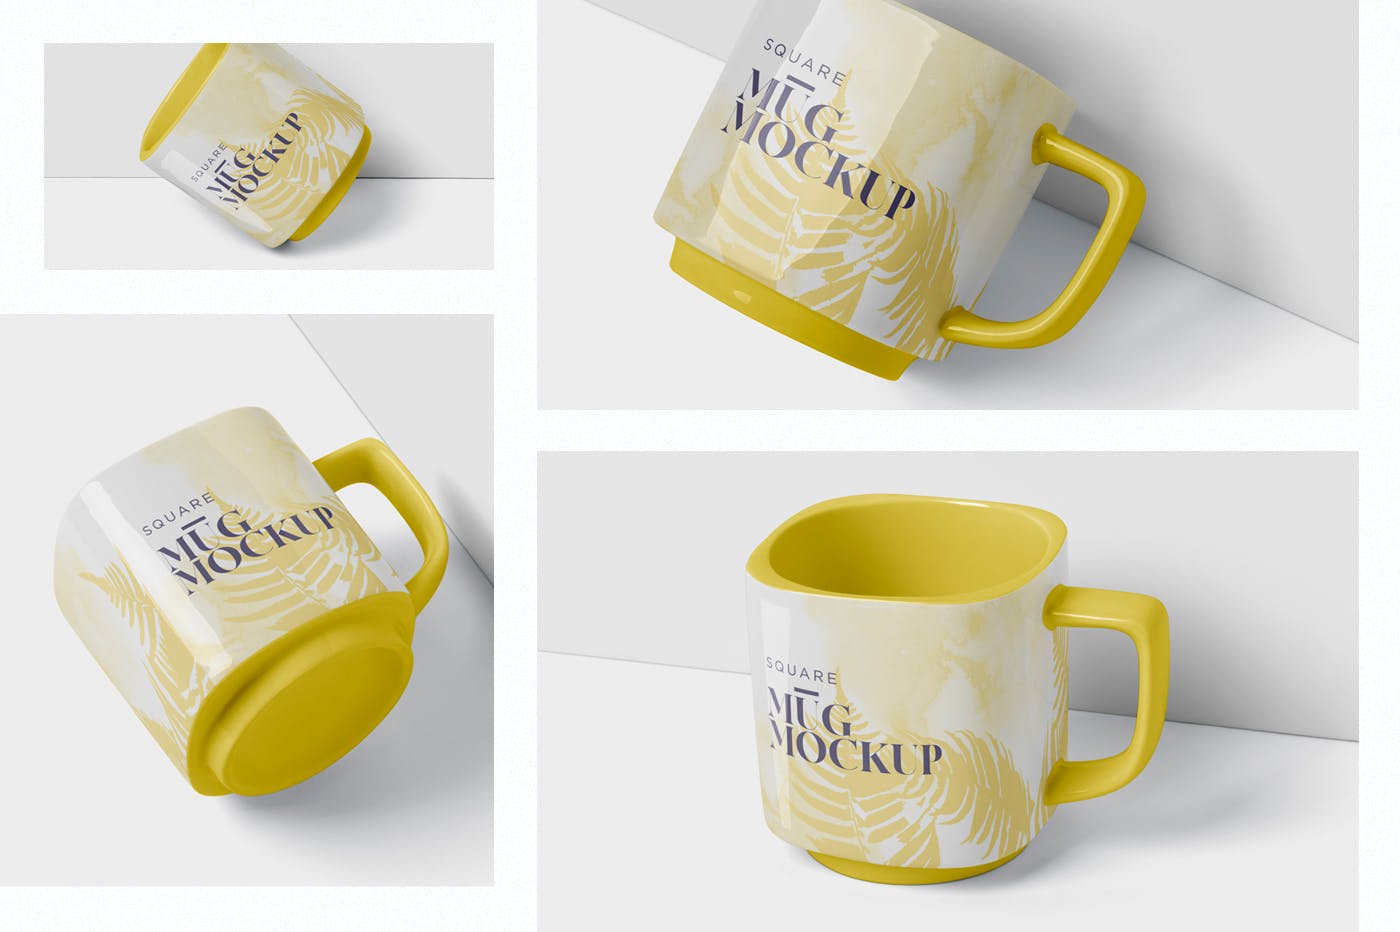 方形马克杯图案设计第一素材精选模板 Mug Mockup – Square Shaped插图(1)